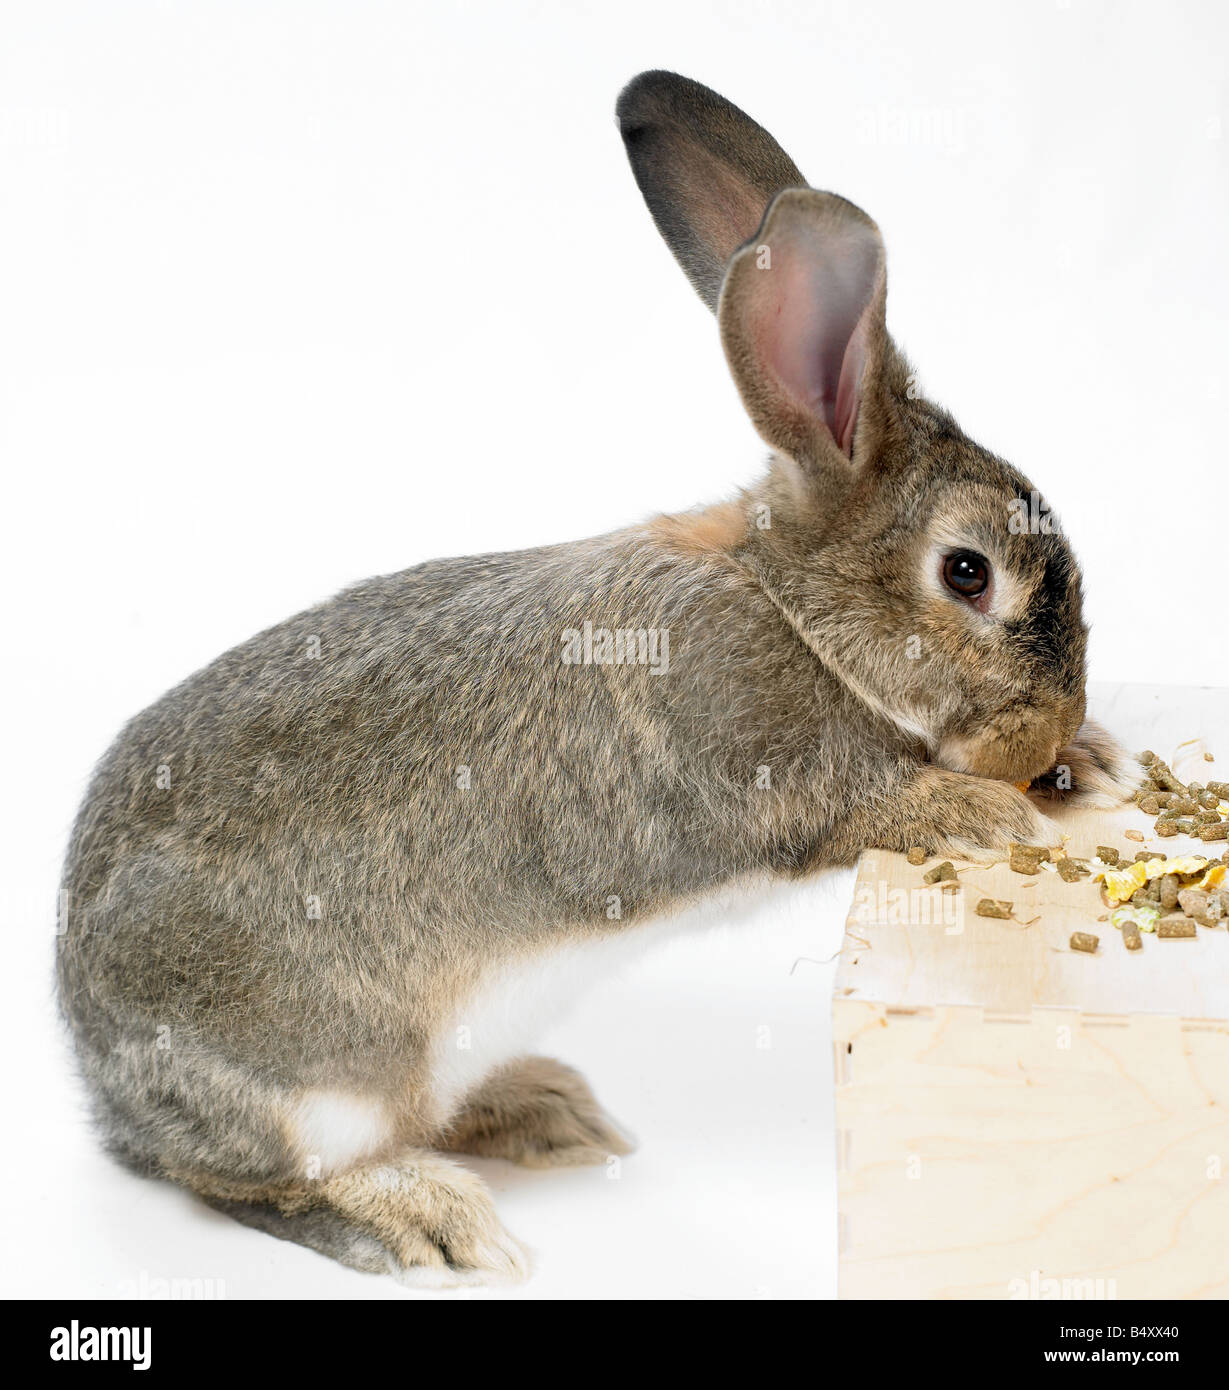 Wilde, inländische Kaninchen auf weißen background.feeding Stockfoto